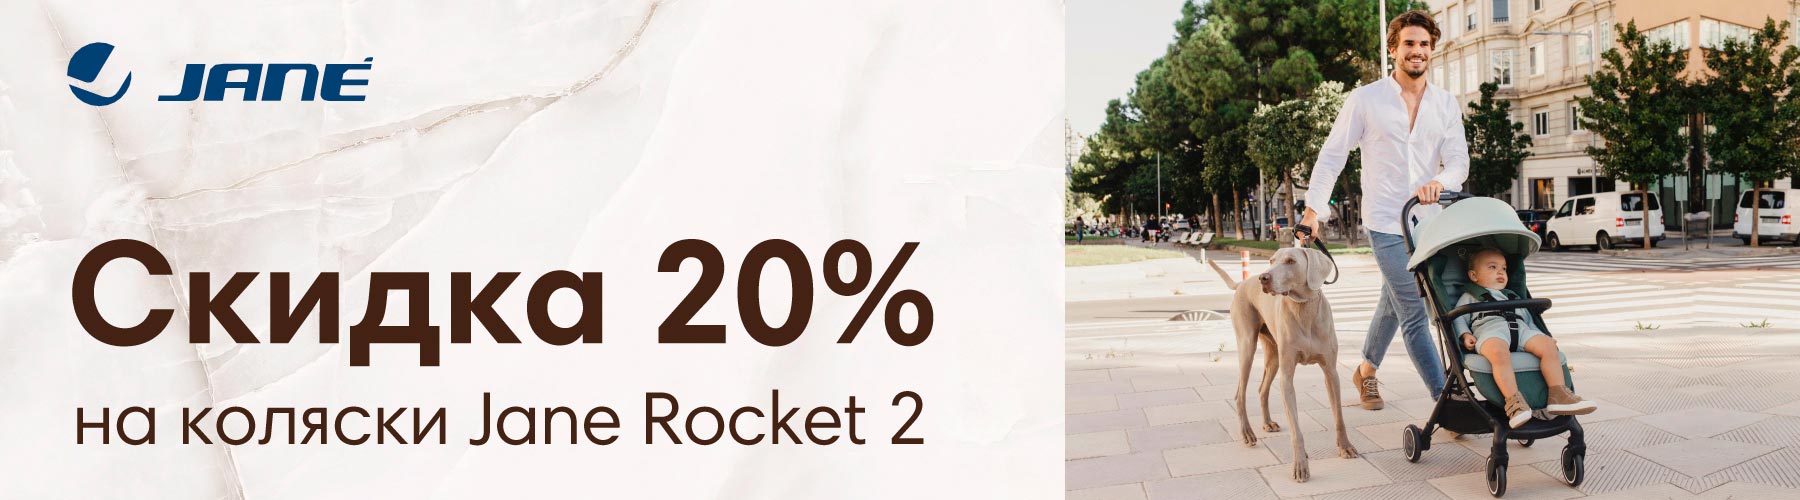 Скидка 20% на коляску Jane Rocket 2